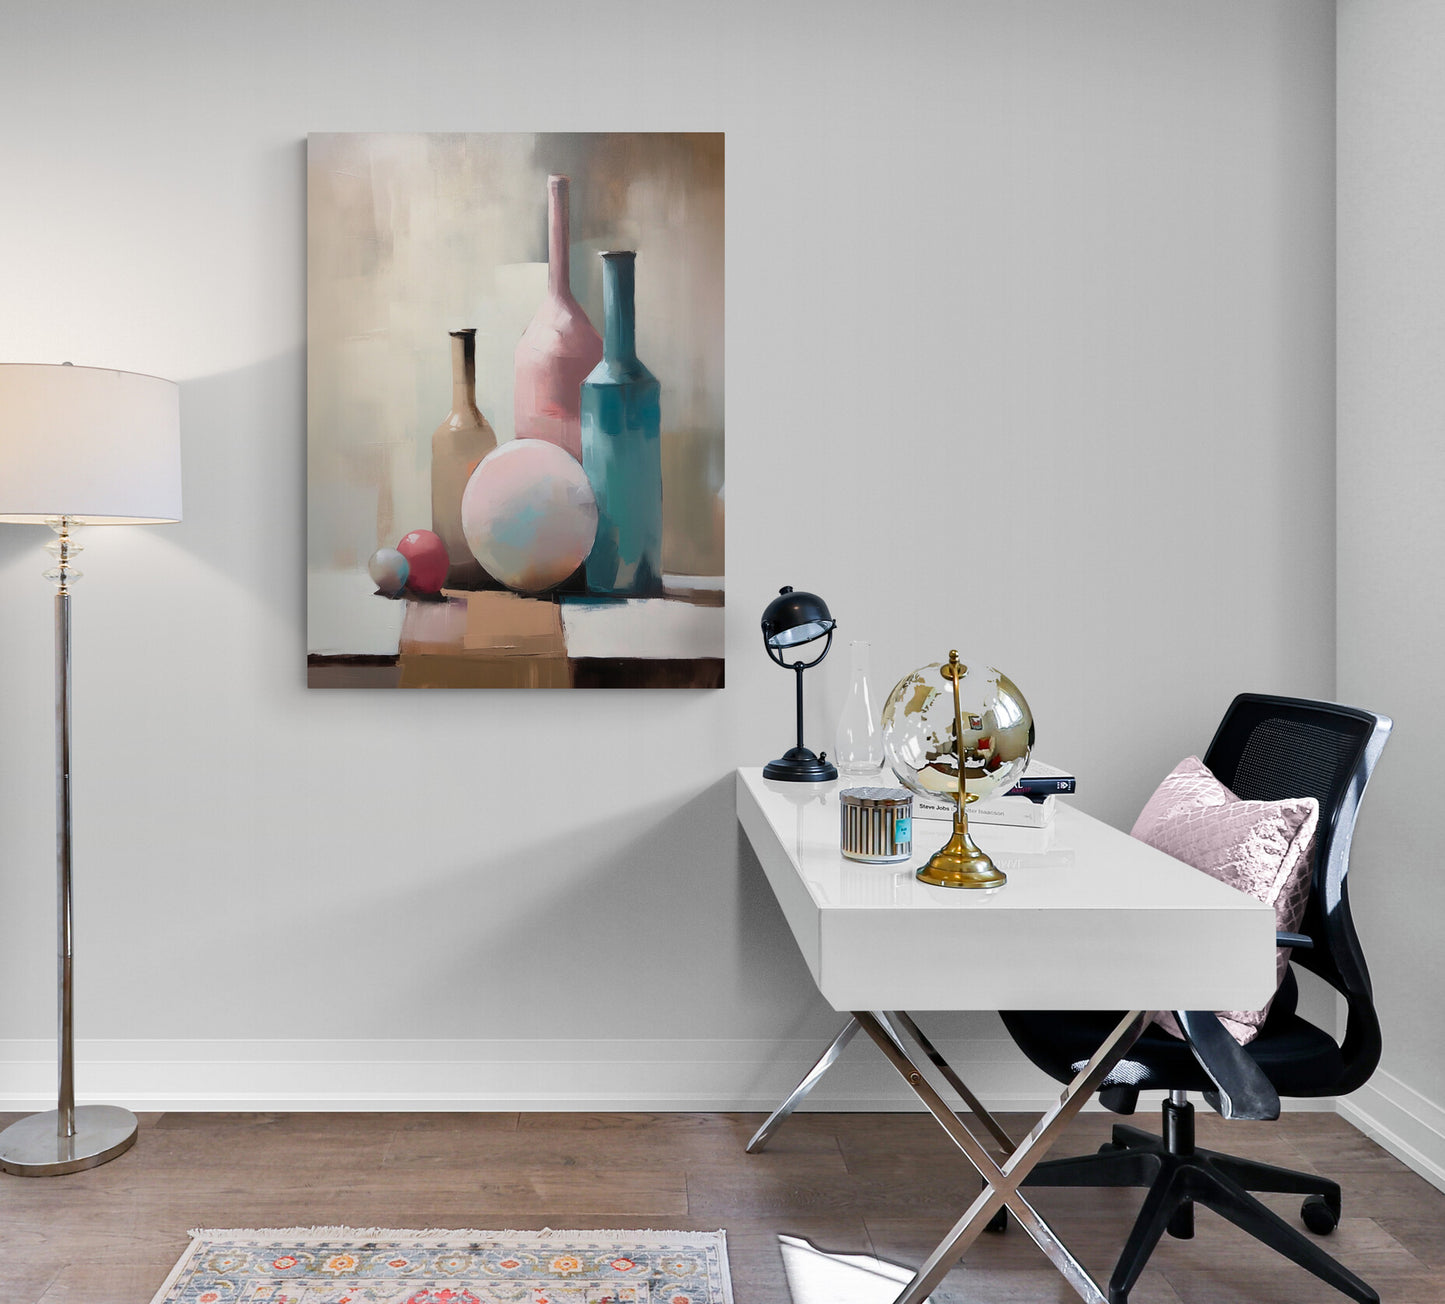 pièce de travail, grand bureau blanc, chaise sur roulette, coussin rose pale, objets décoratifs, lampe sur pied, poster de vases.